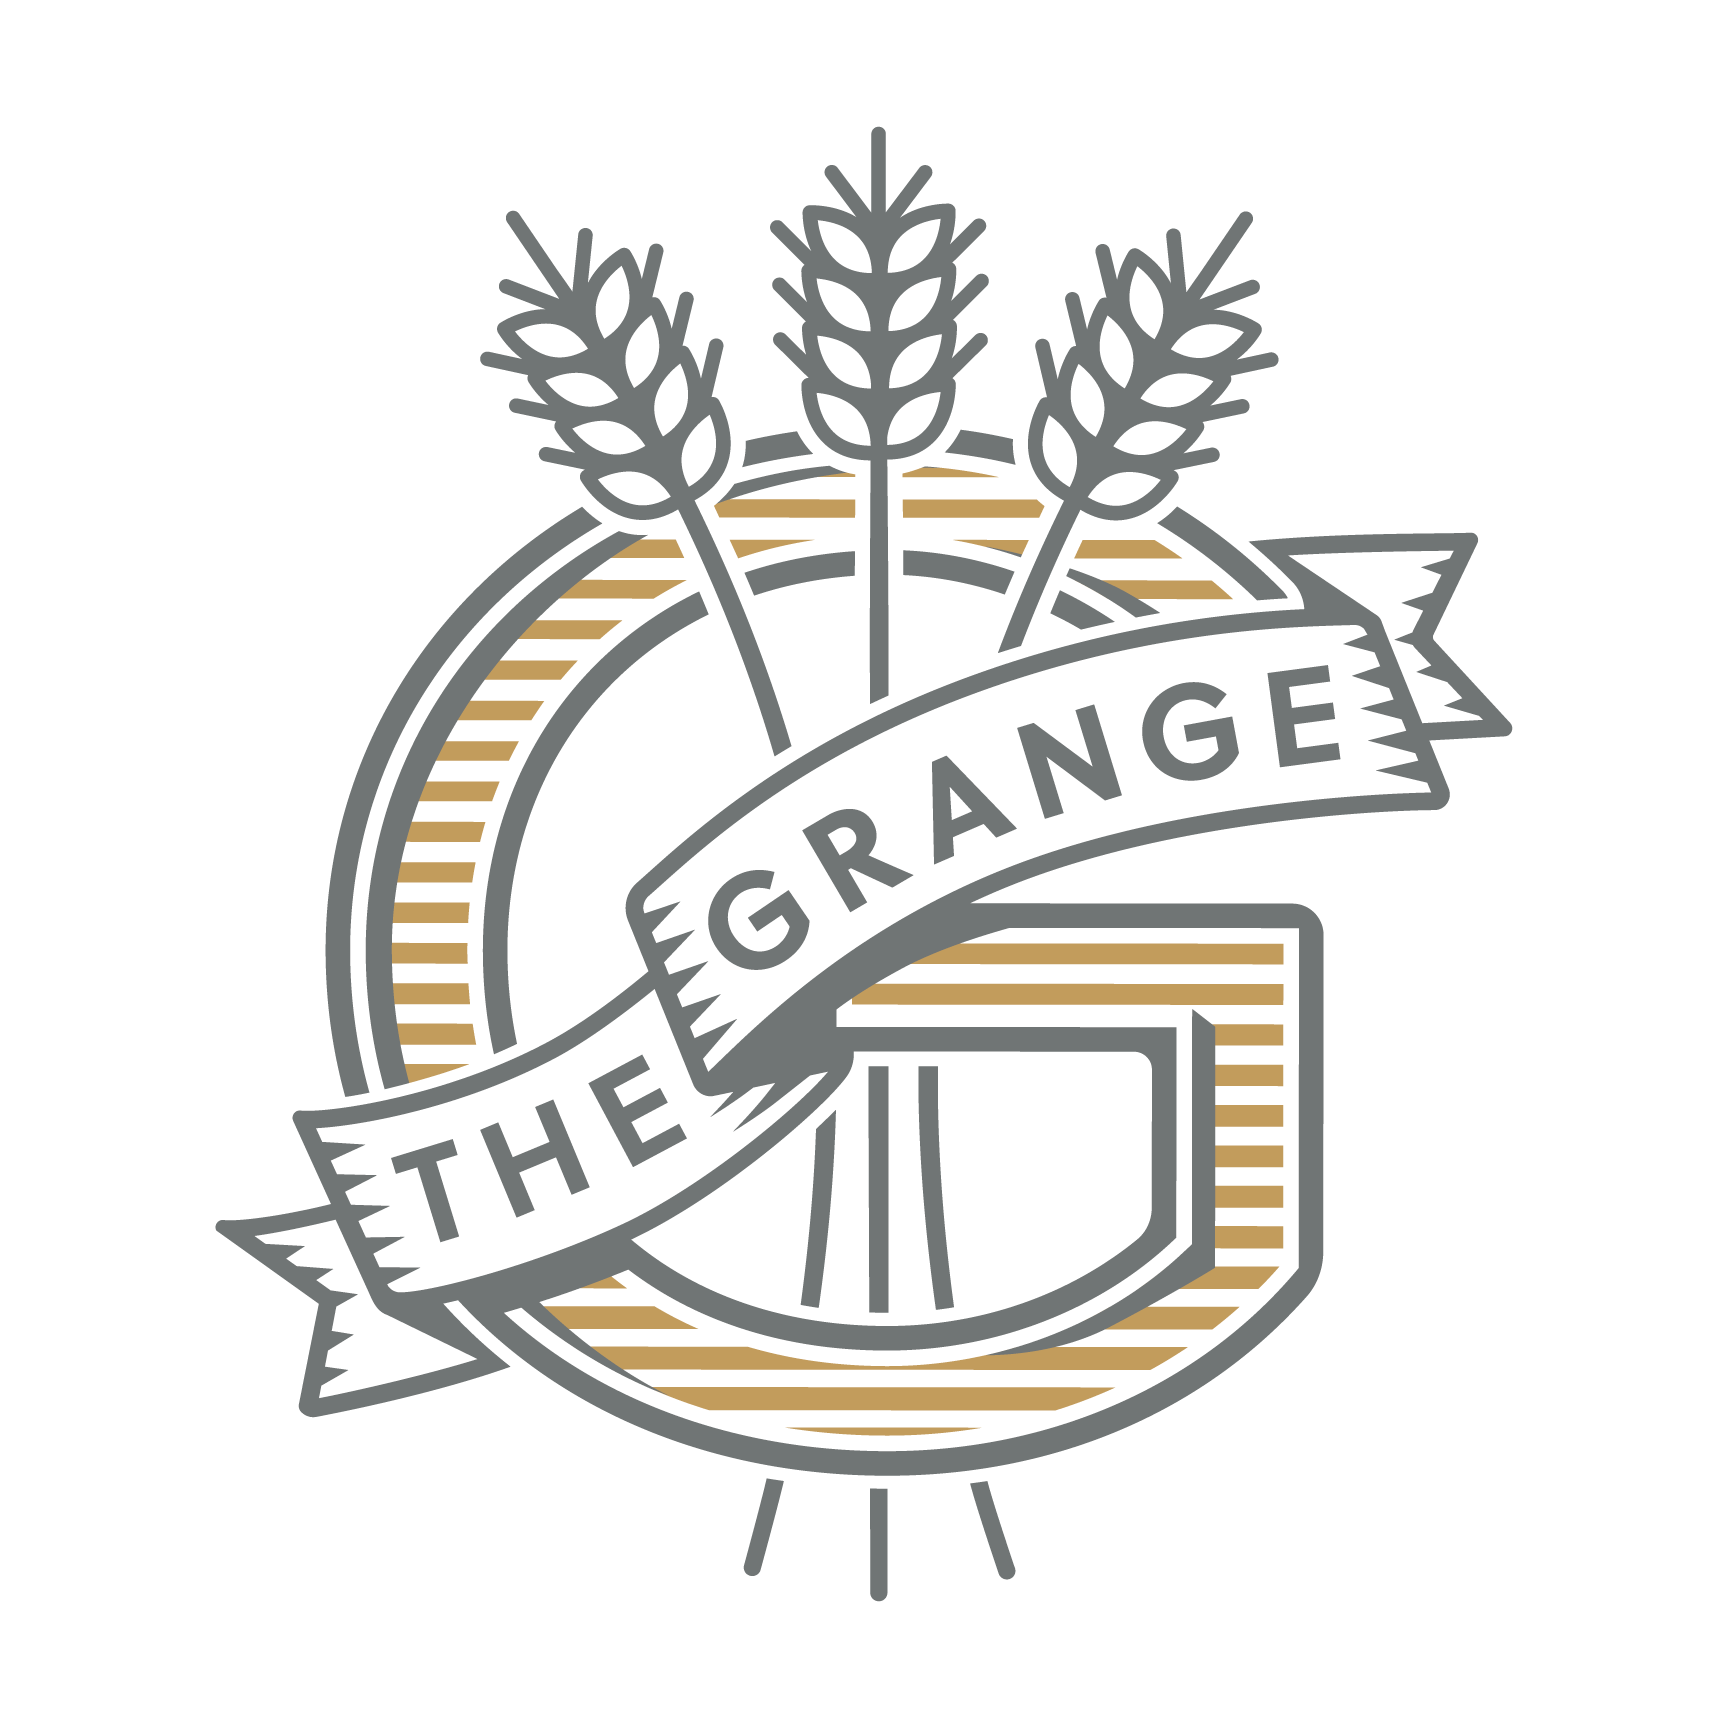 The Grange Community Kitchen